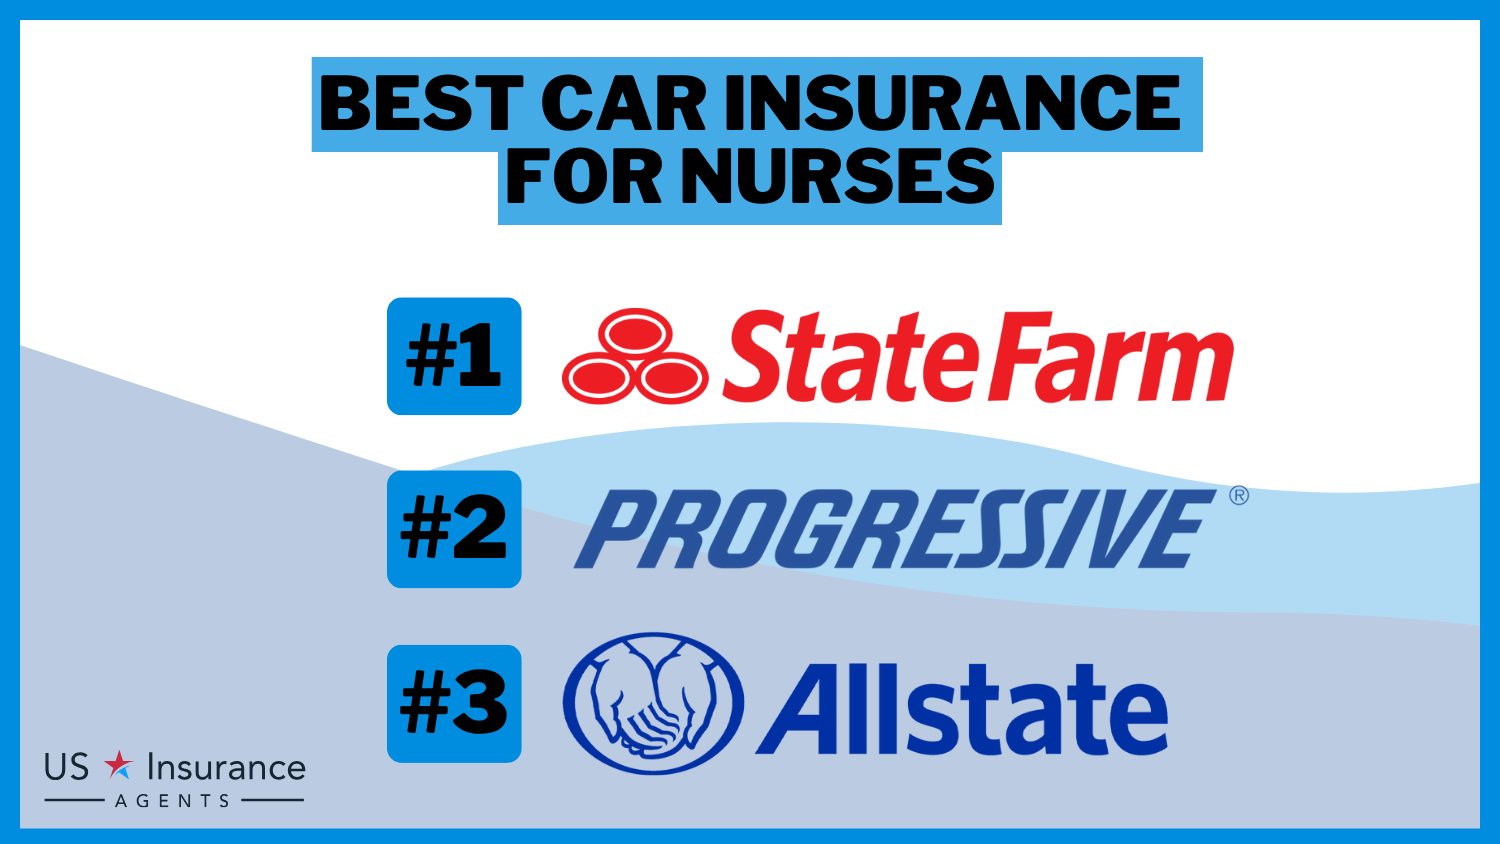 State Farm, Progressive, Allstate: Best Car Insurance for Nurses